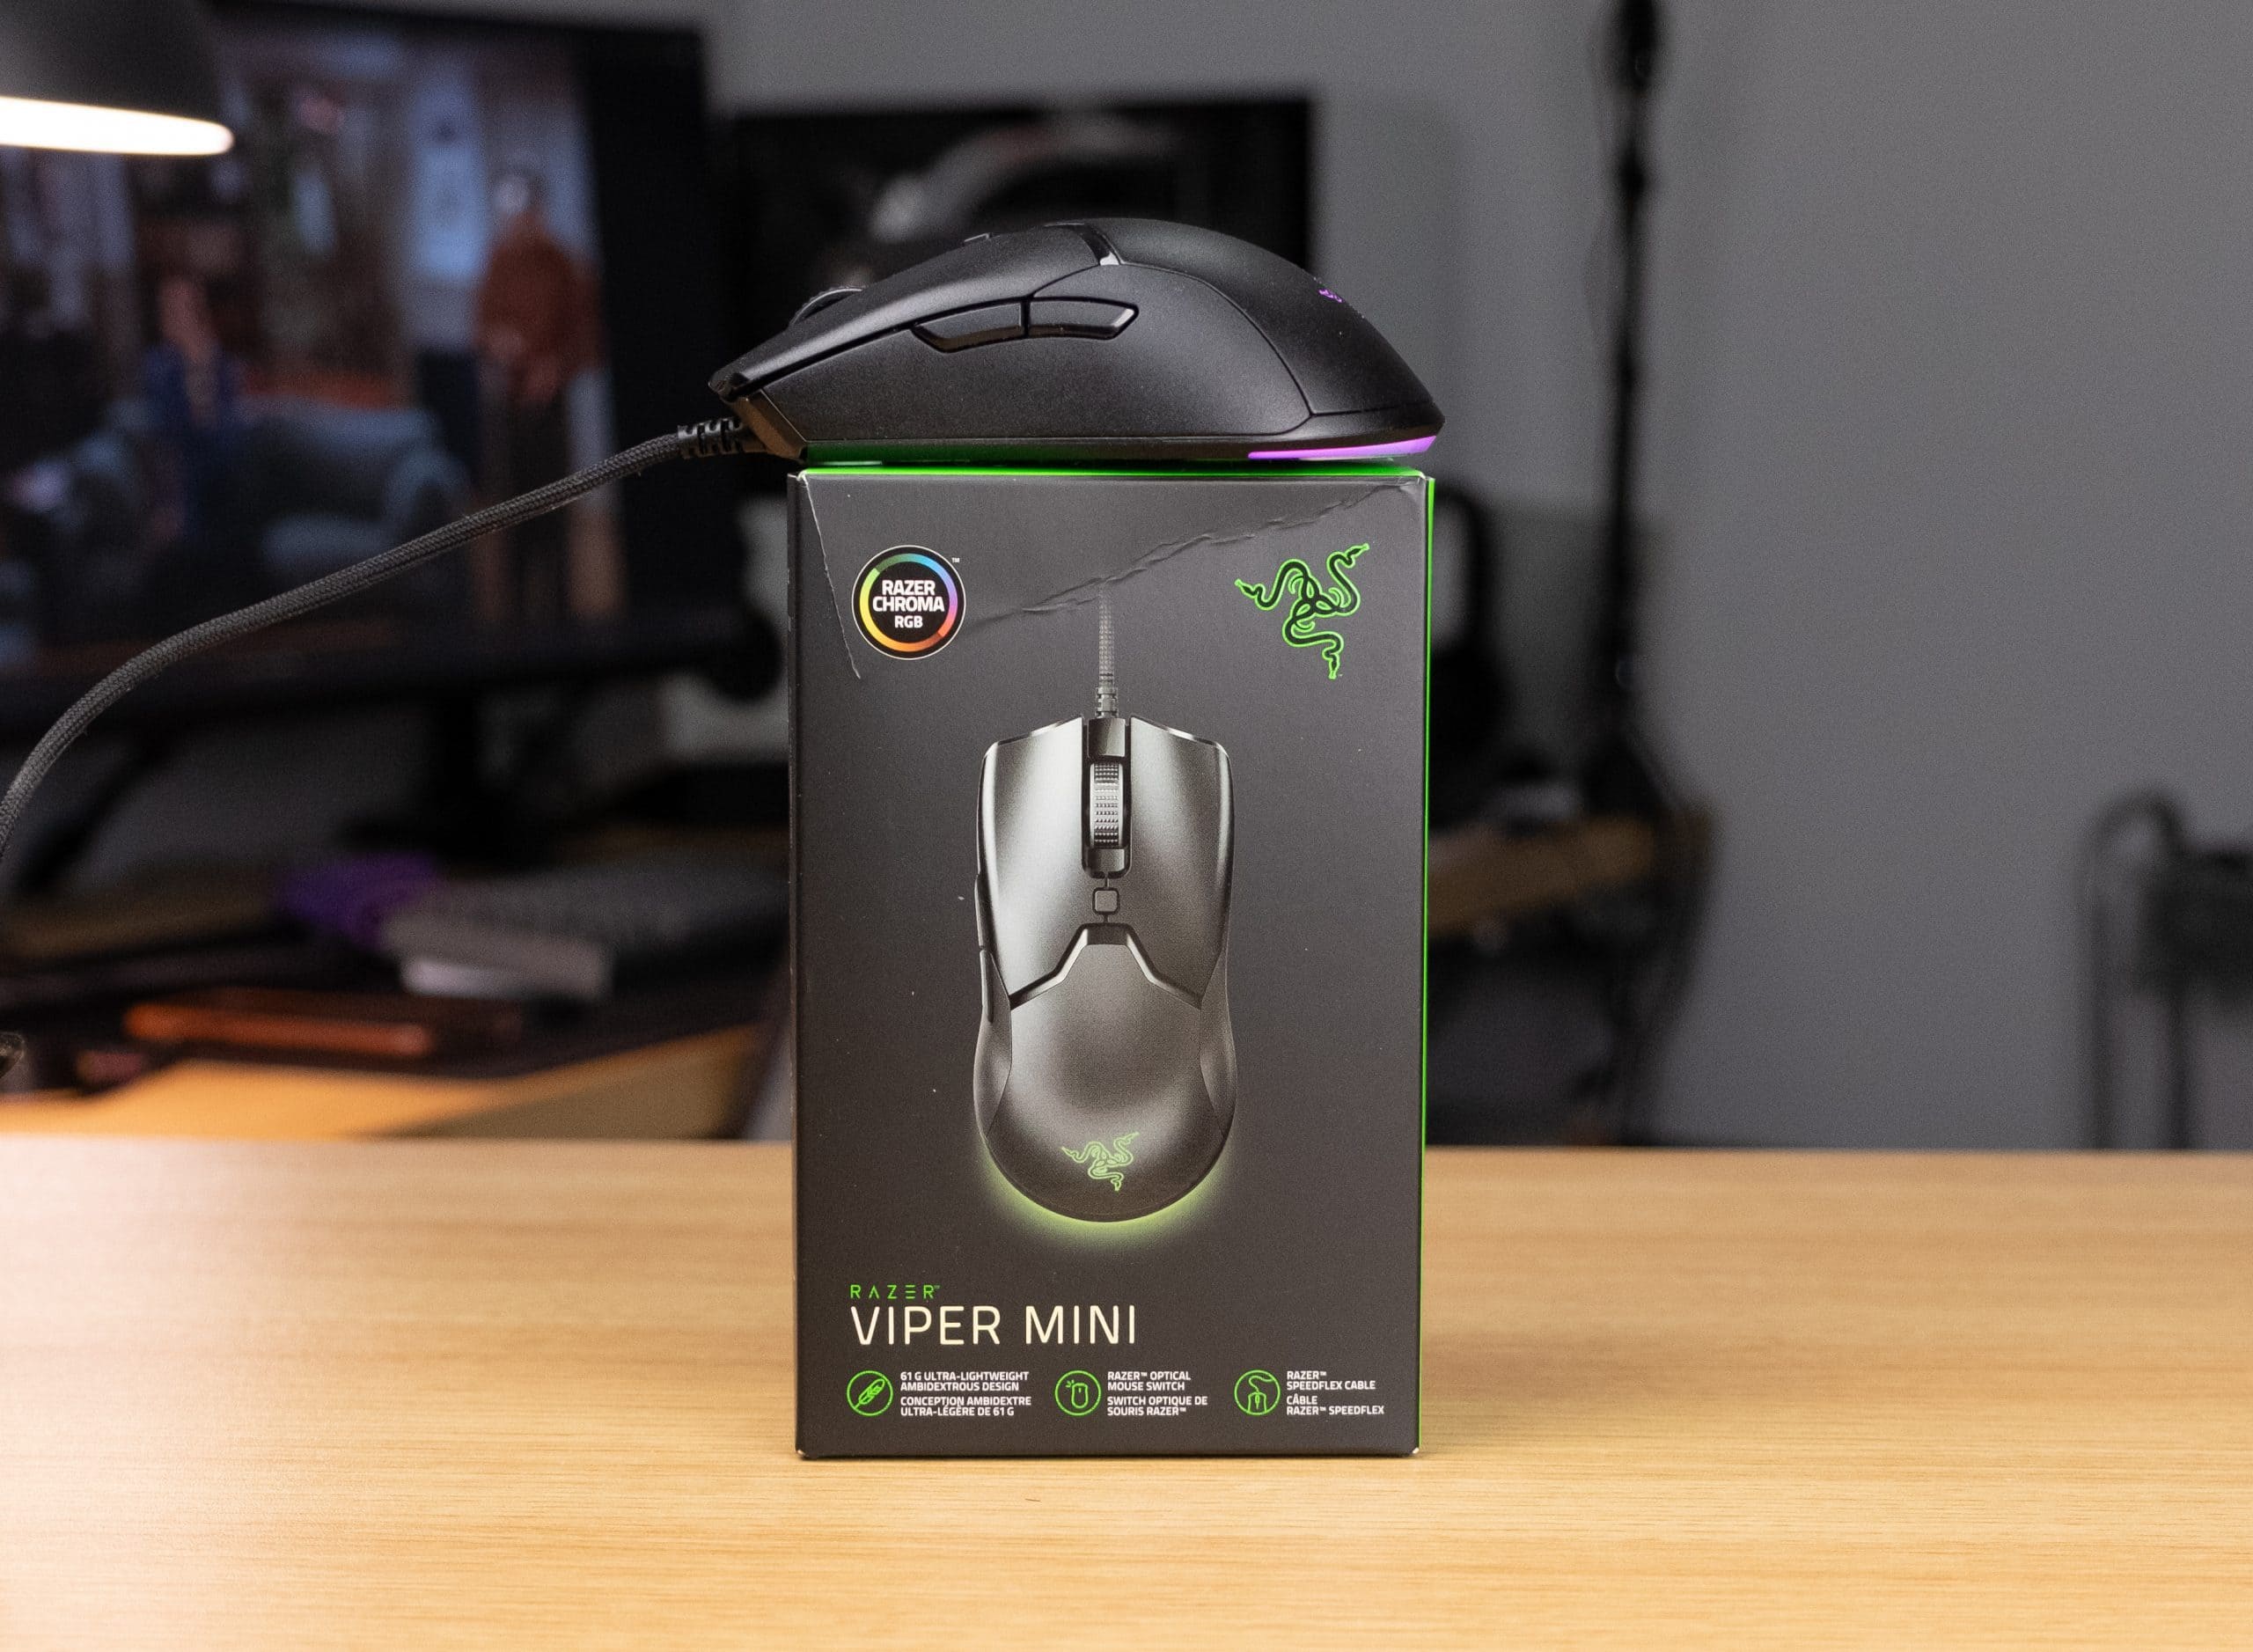 Razer Viper Mini Review - Mighty Mini Mouse